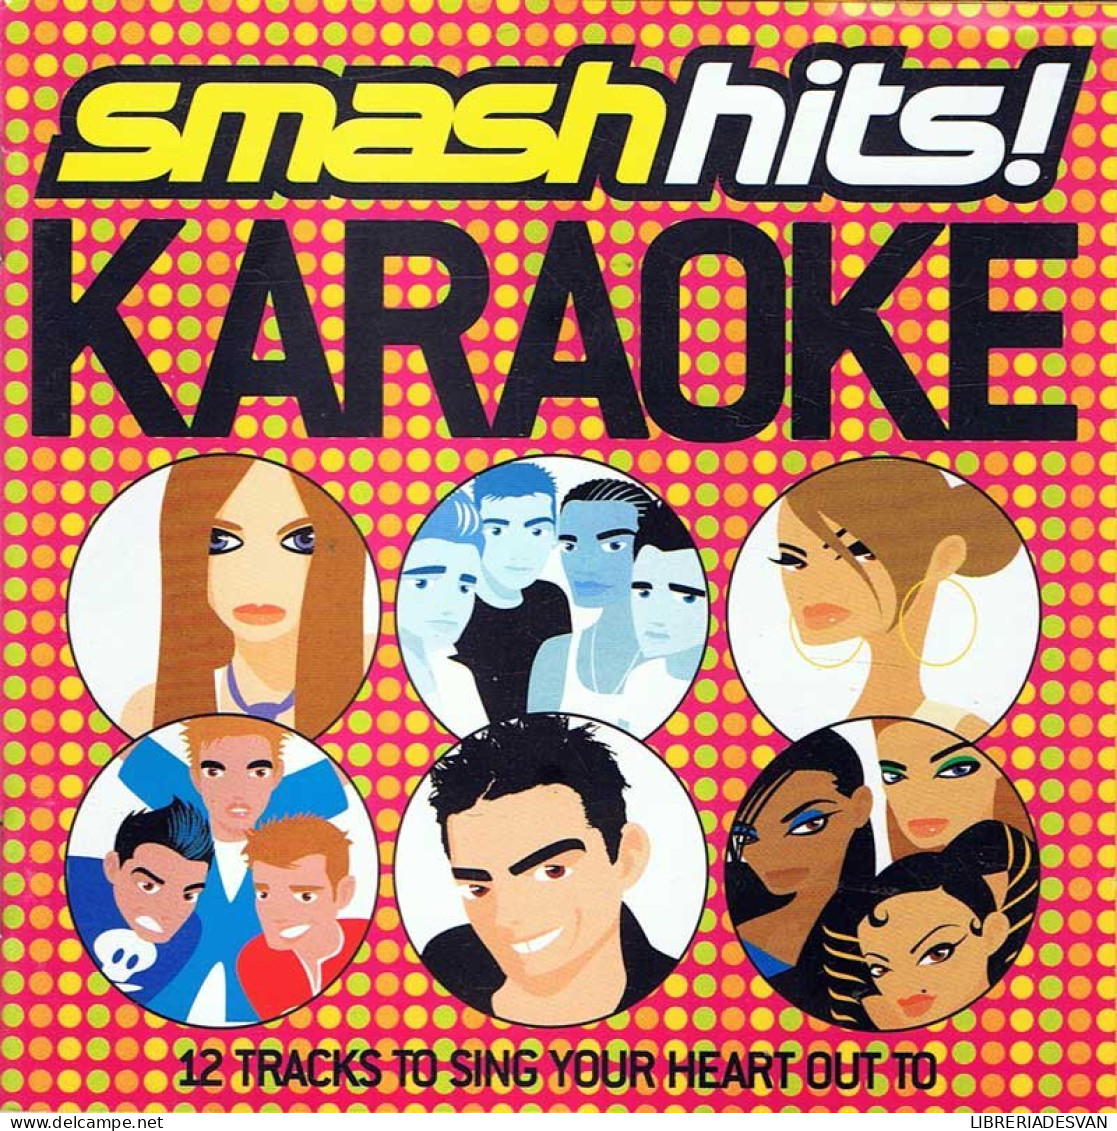 Smash Hits Karaoke. CD - Dance, Techno & House